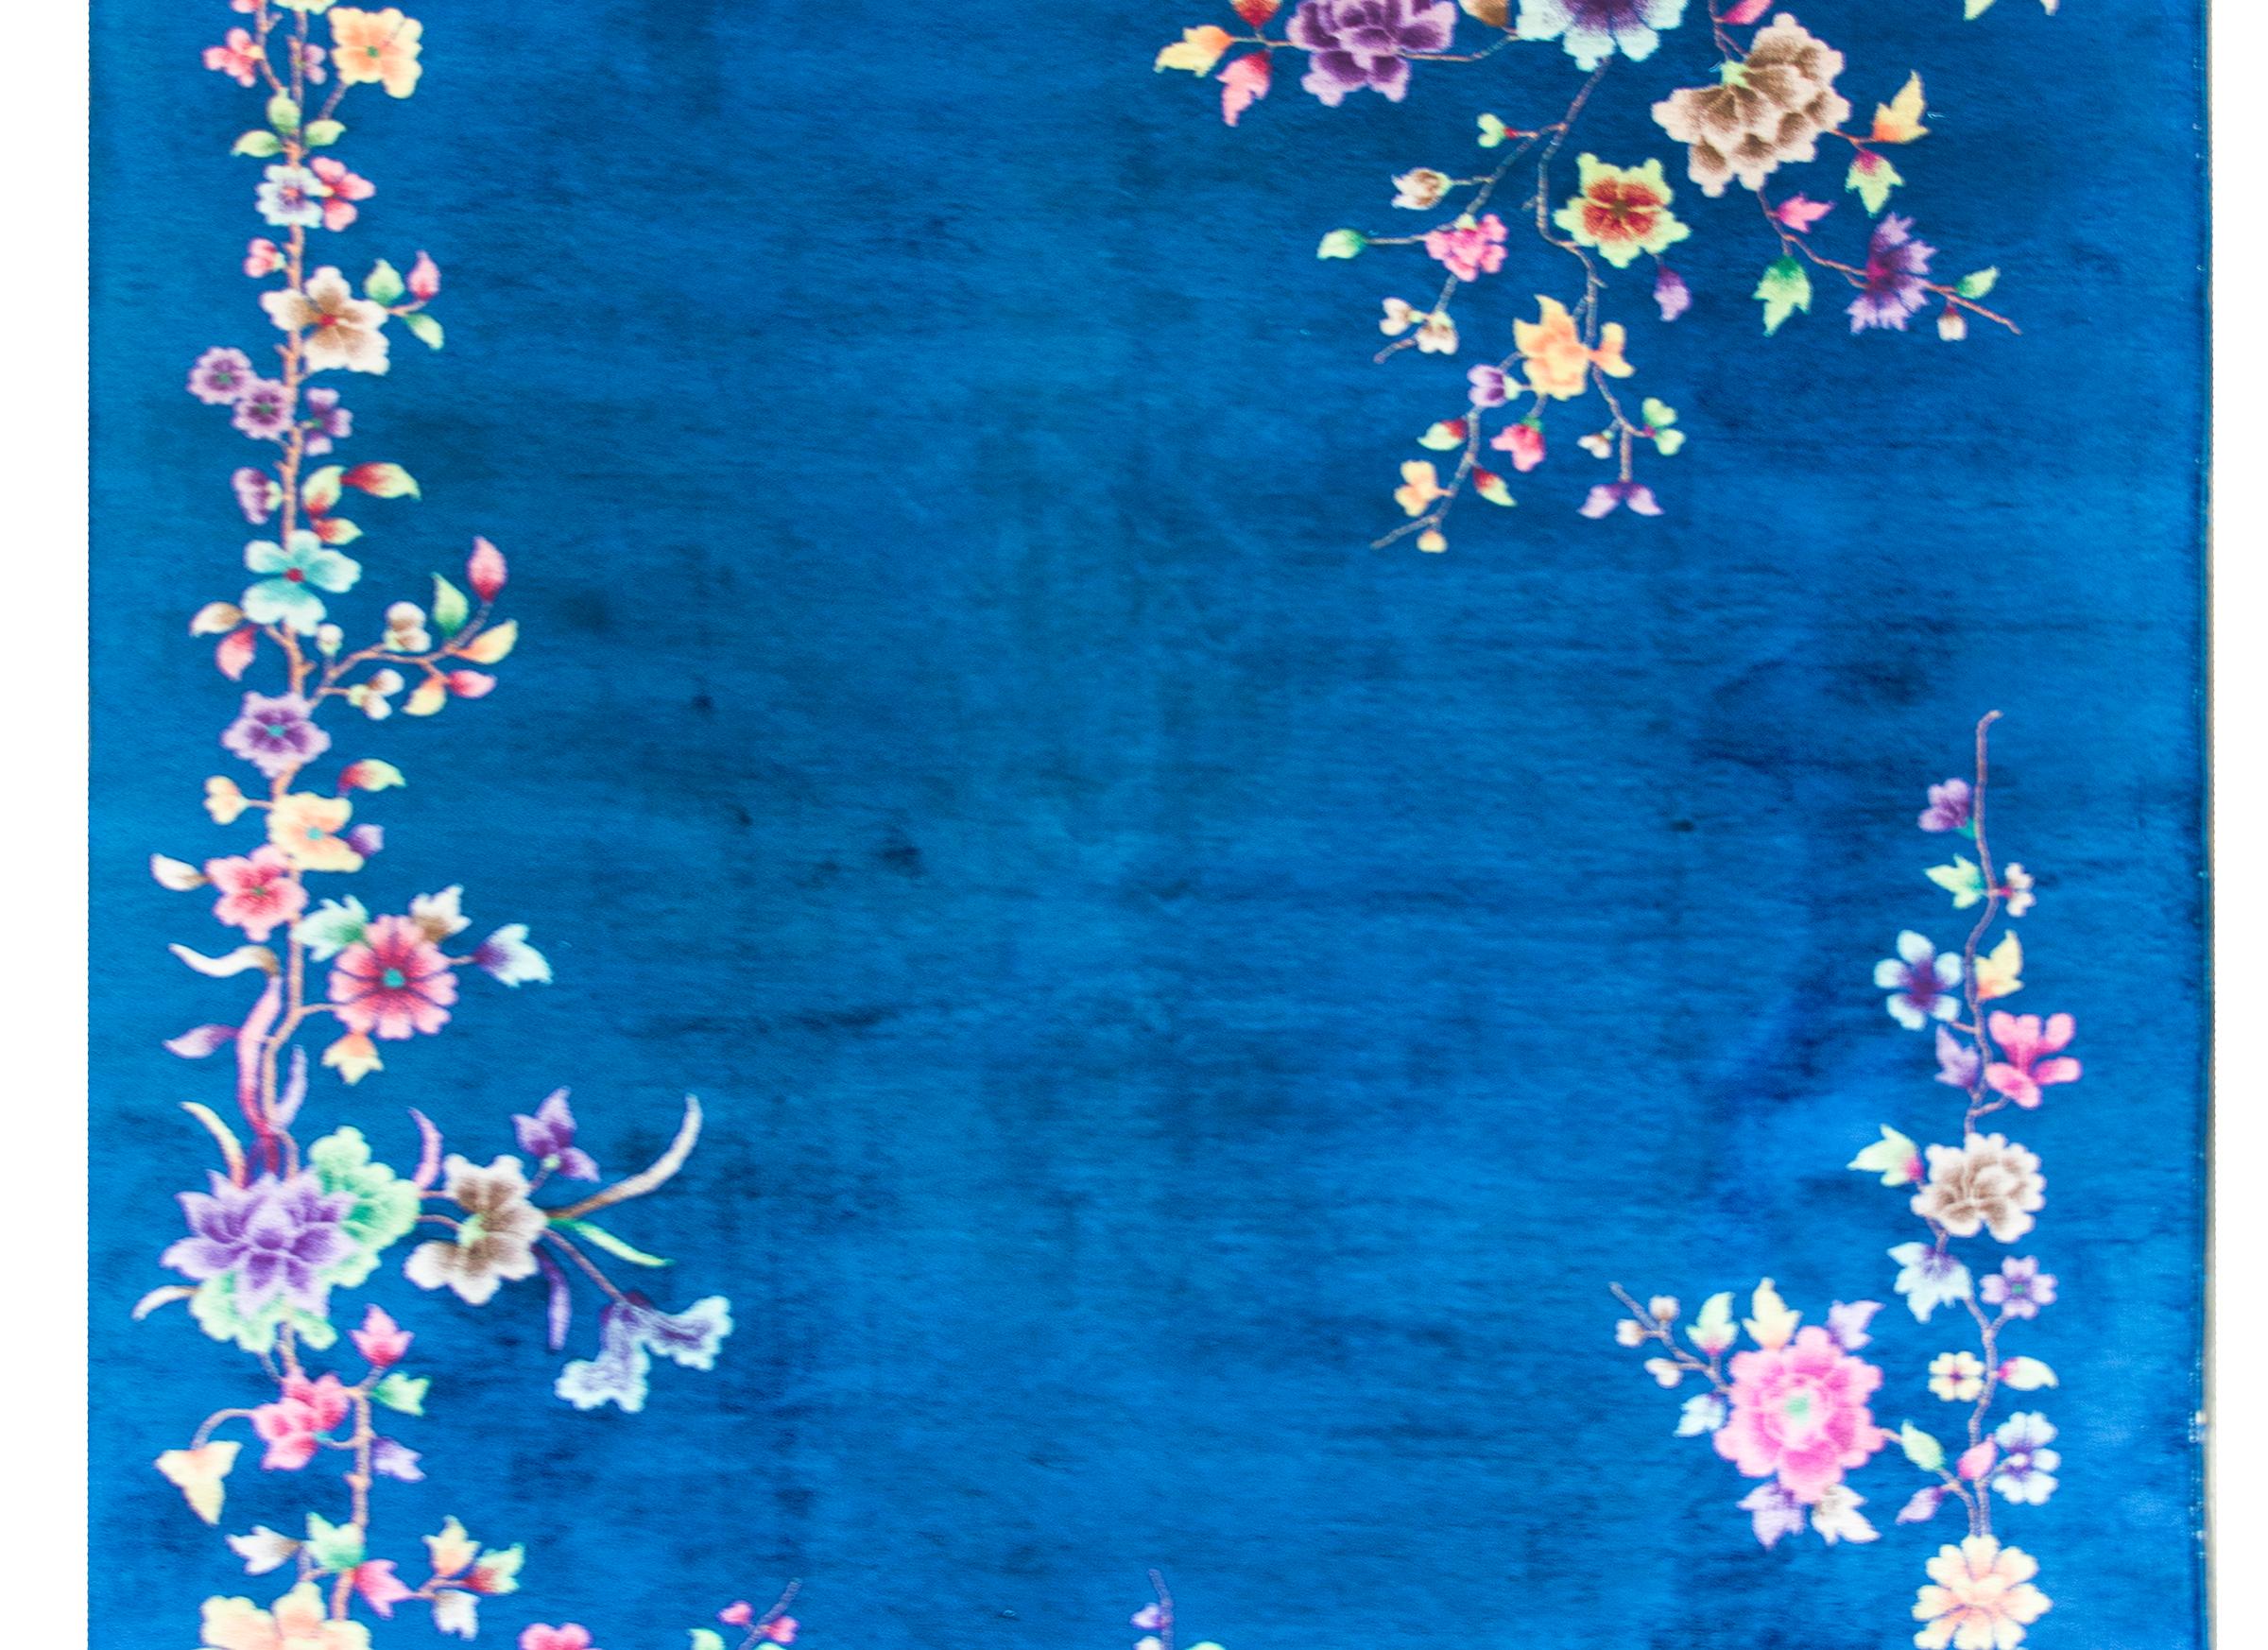 Ein atemberaubender chinesischer Art-Déco-Teppich aus dem frühen 20. Jahrhundert mit einem prächtigen kobaltblauen Feld mit einer asymmetrischen Komposition mehrfarbiger Blumen, darunter Pfingstrosen, Lotusblumen und Chrysanthemen, die eine